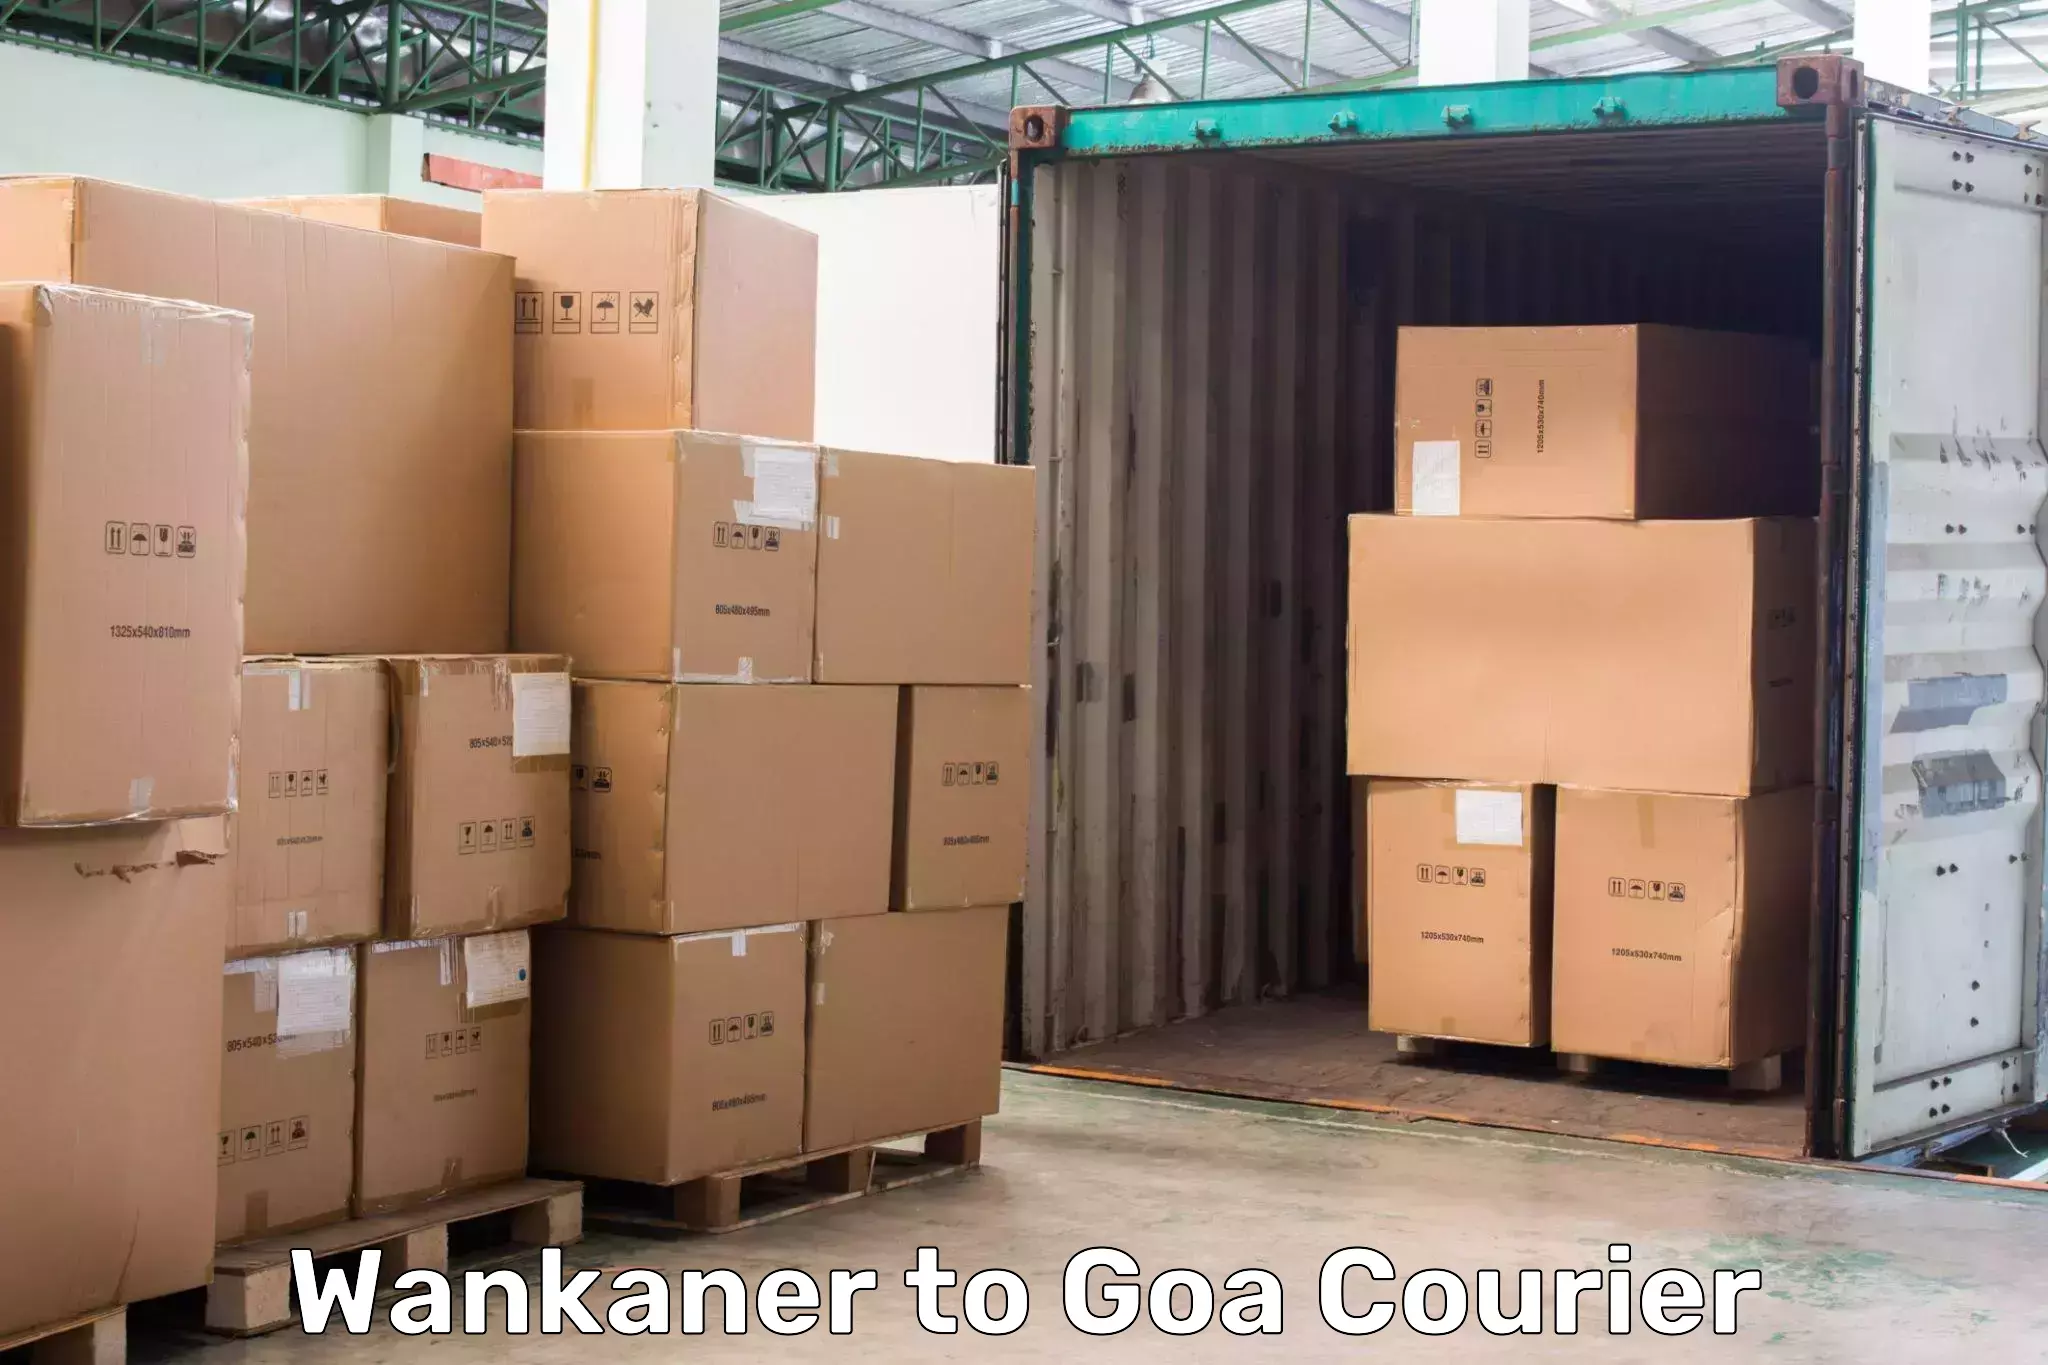 Affordable parcel service Wankaner to Ponda